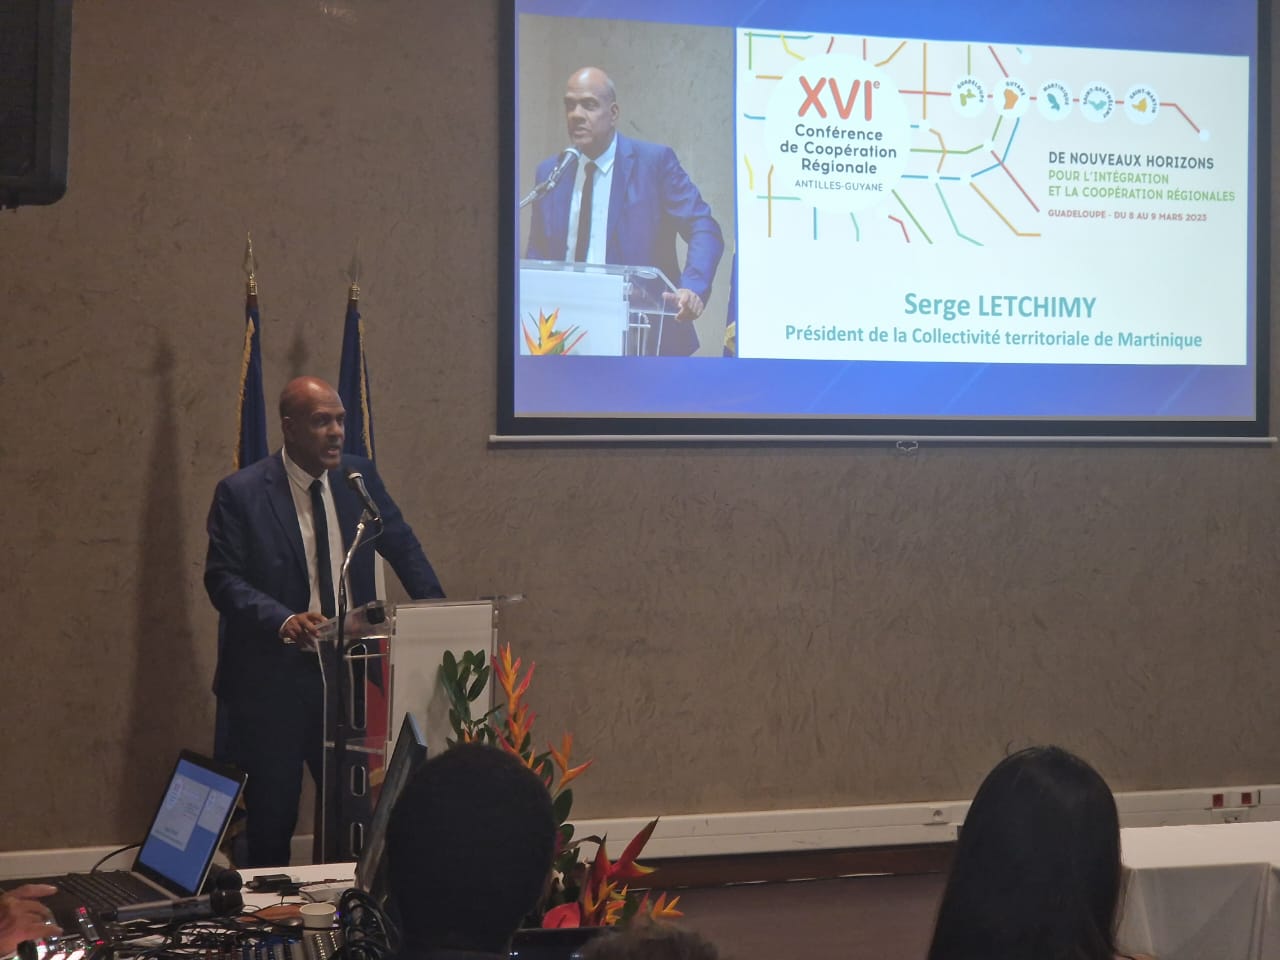     La 16e conférence de coopération régionale Antilles-Guyane a démarré ce mercredi

